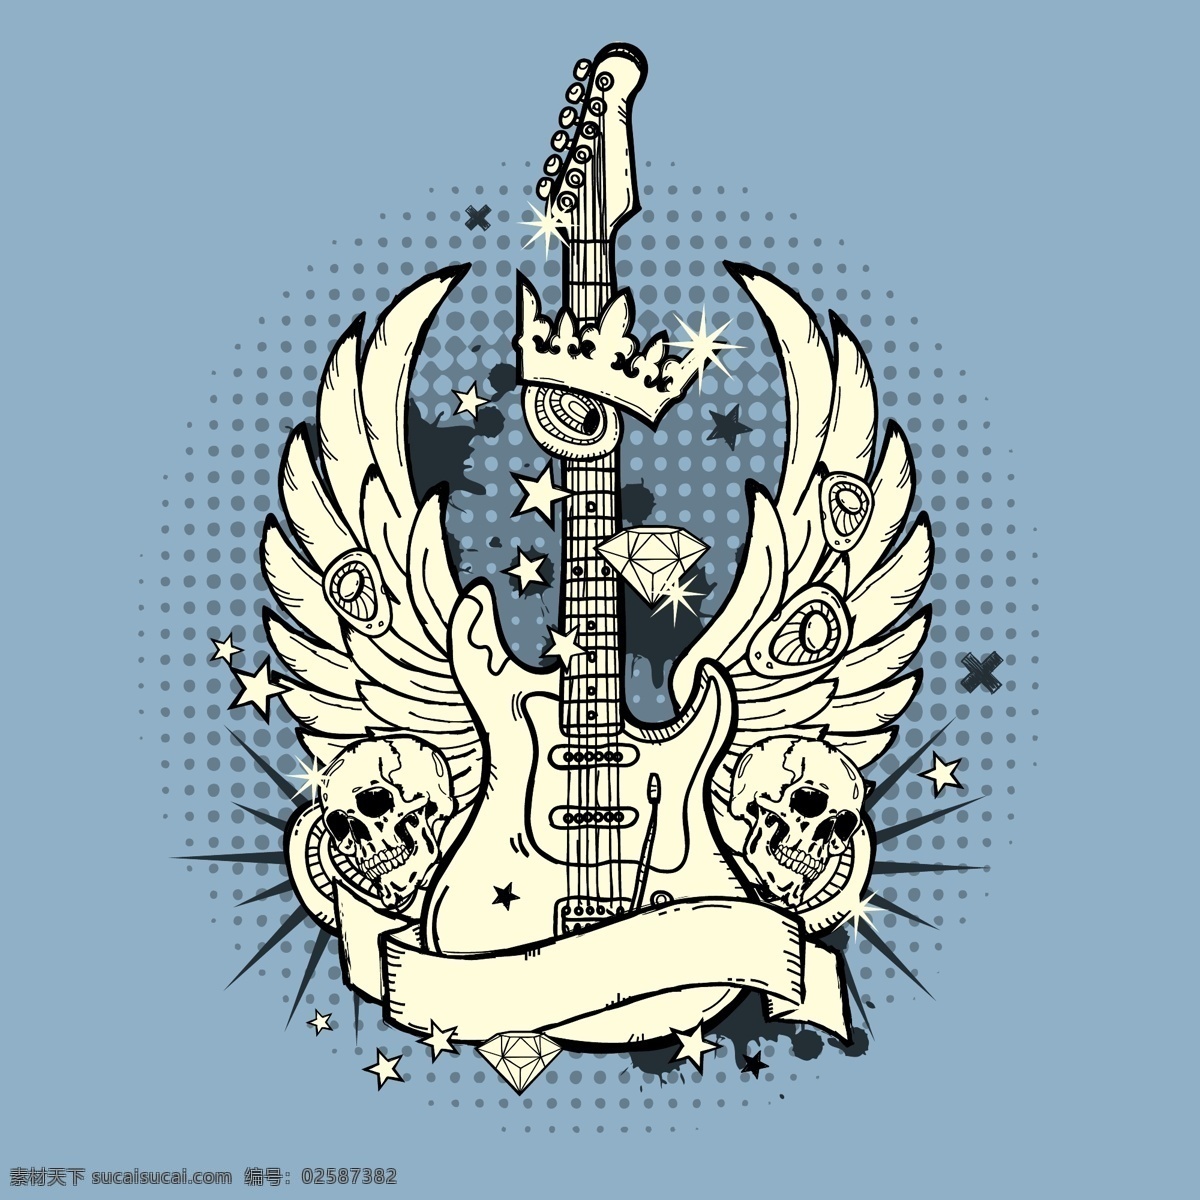 吉他 矢量图 话筒 麦克风 翅膀 双翼 吉他乐器 摇滚音乐 音乐海报 影音娱乐 生活百科 矢量素材 白色